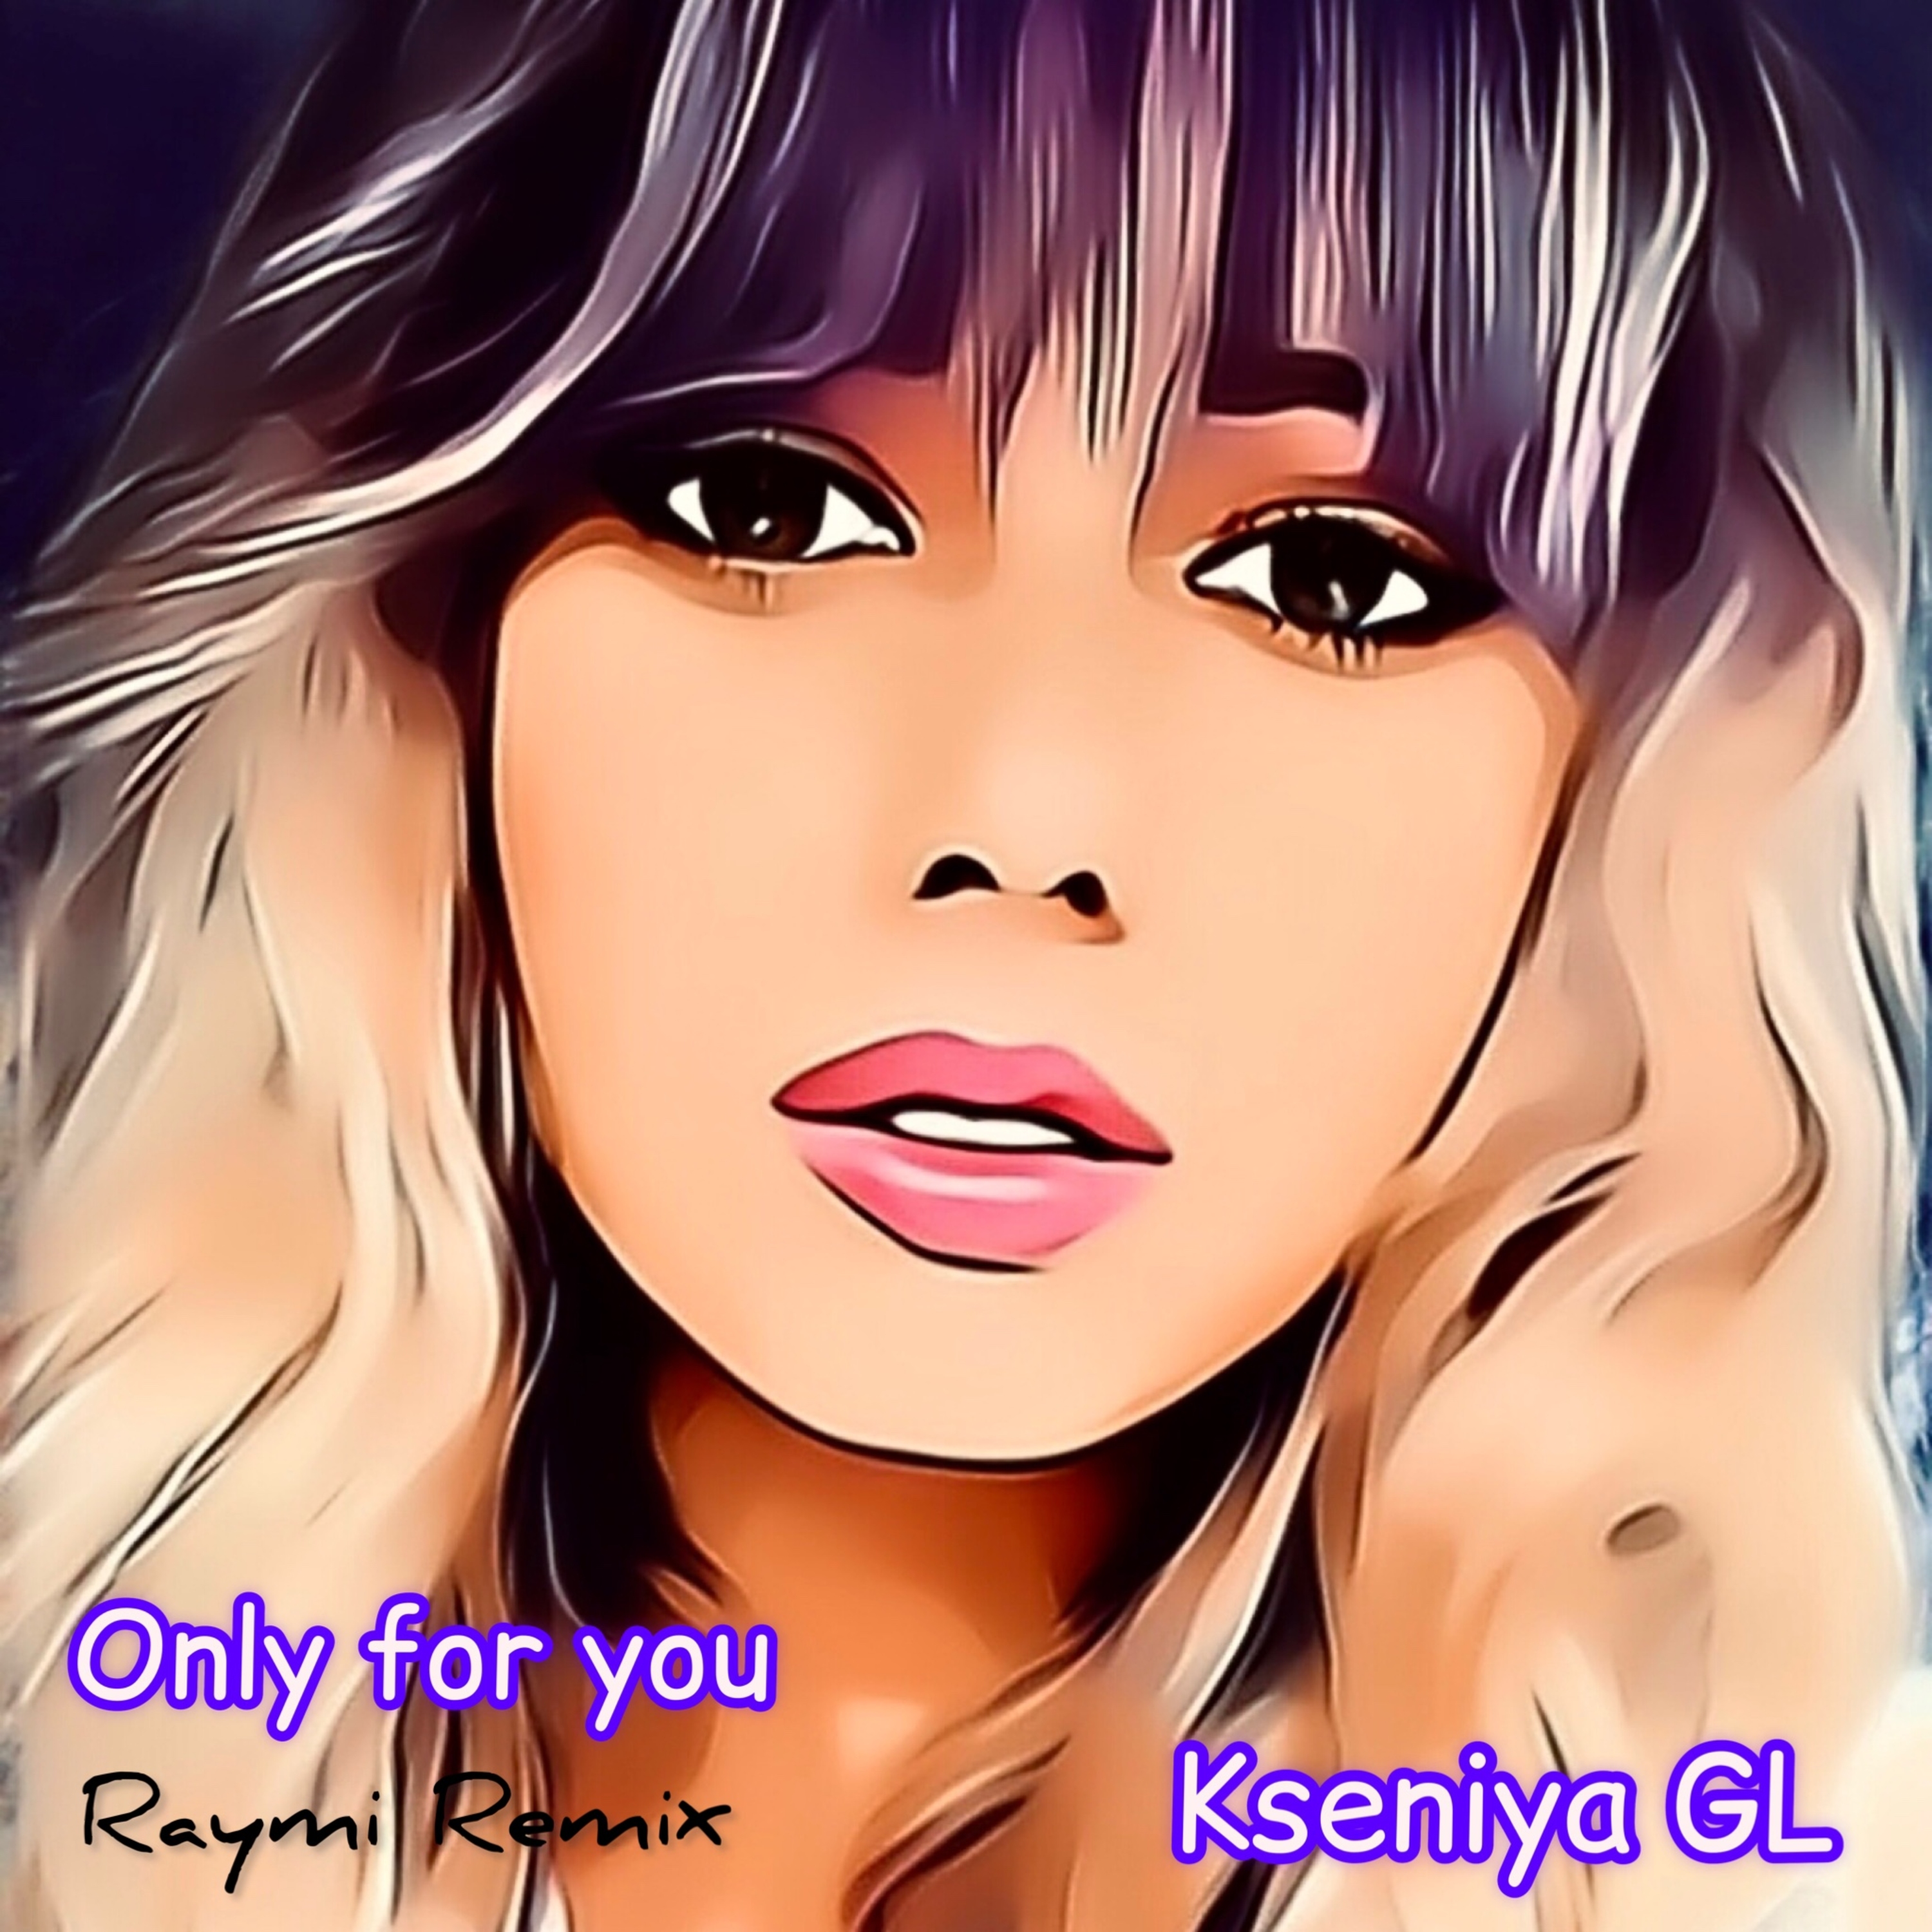 Kseniya gl будем вдвоем raymi remix. Kseniya gl. Only for you Kseniya gl. Kseniya gl певица.